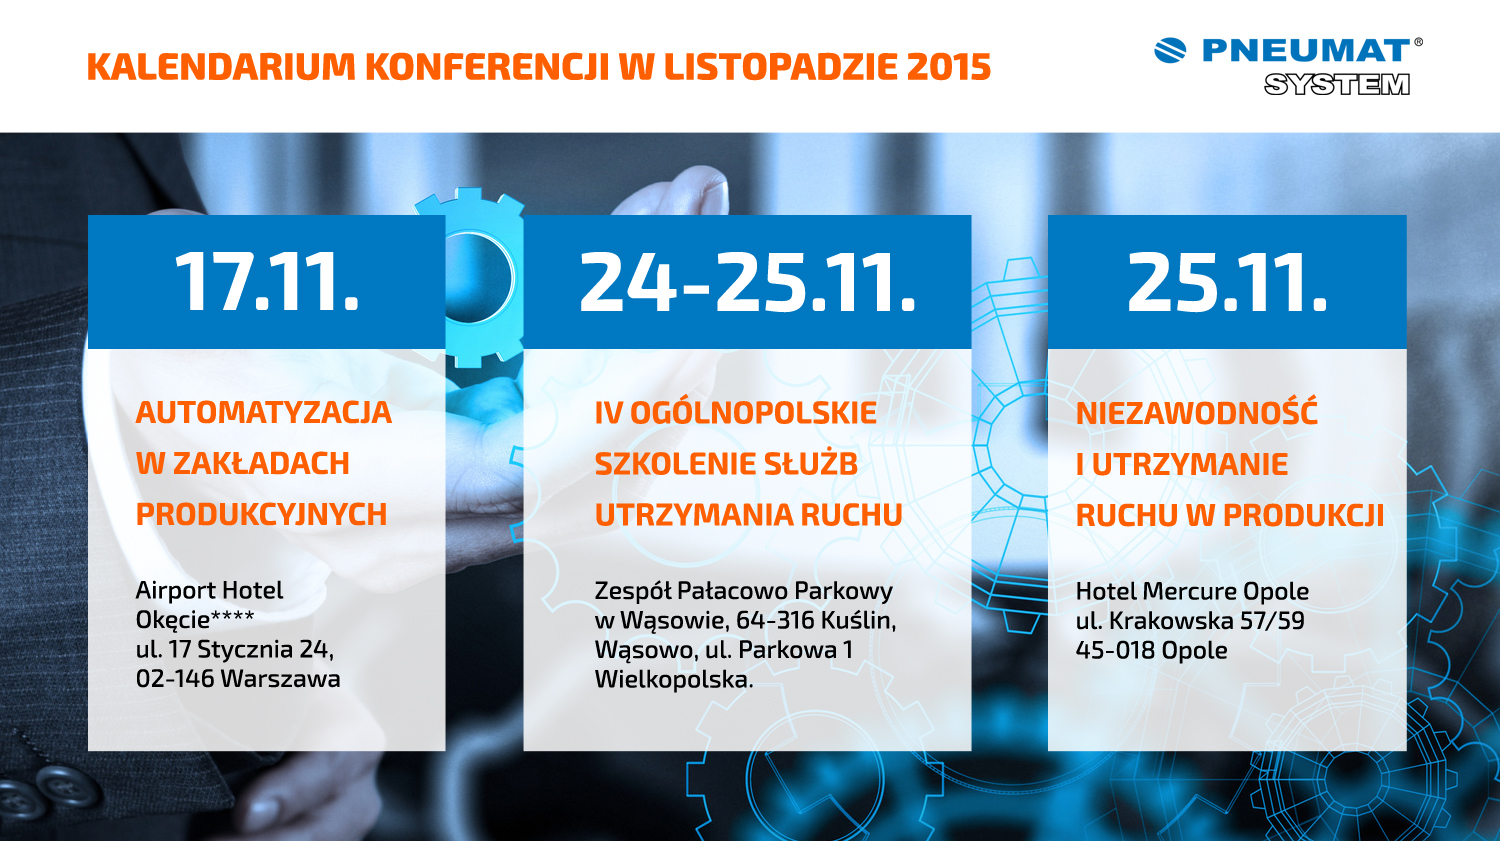 Kalendarium konferencji w listopadzie 2015